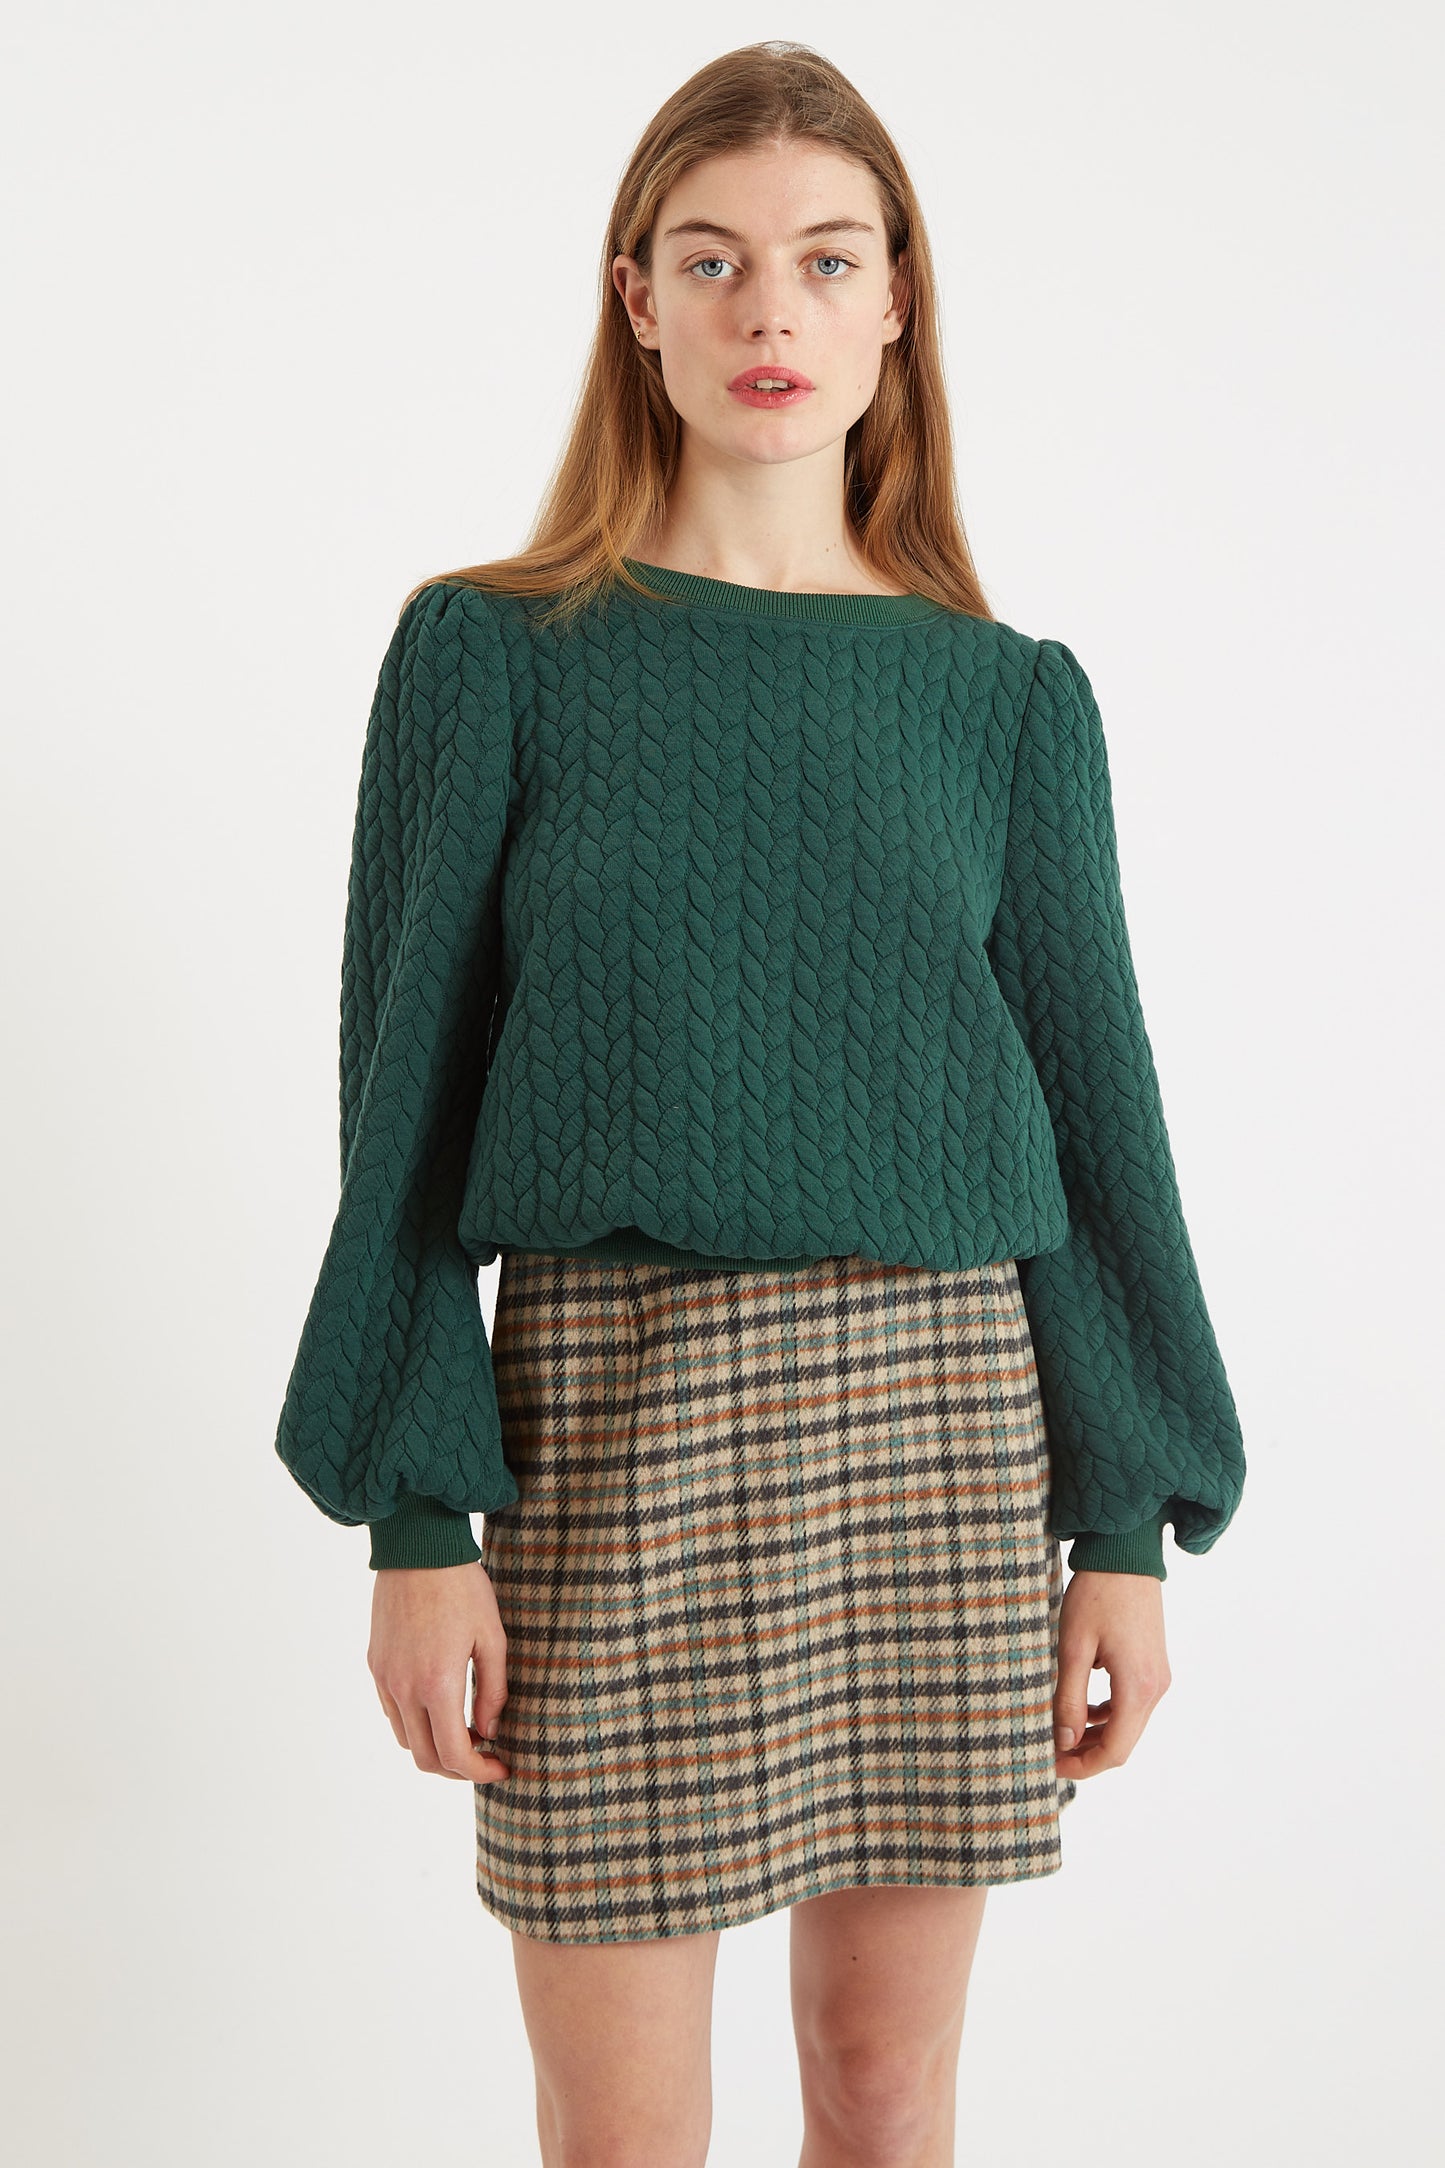 Ellie Plait Puff Sleeve Sweatshirt - Green